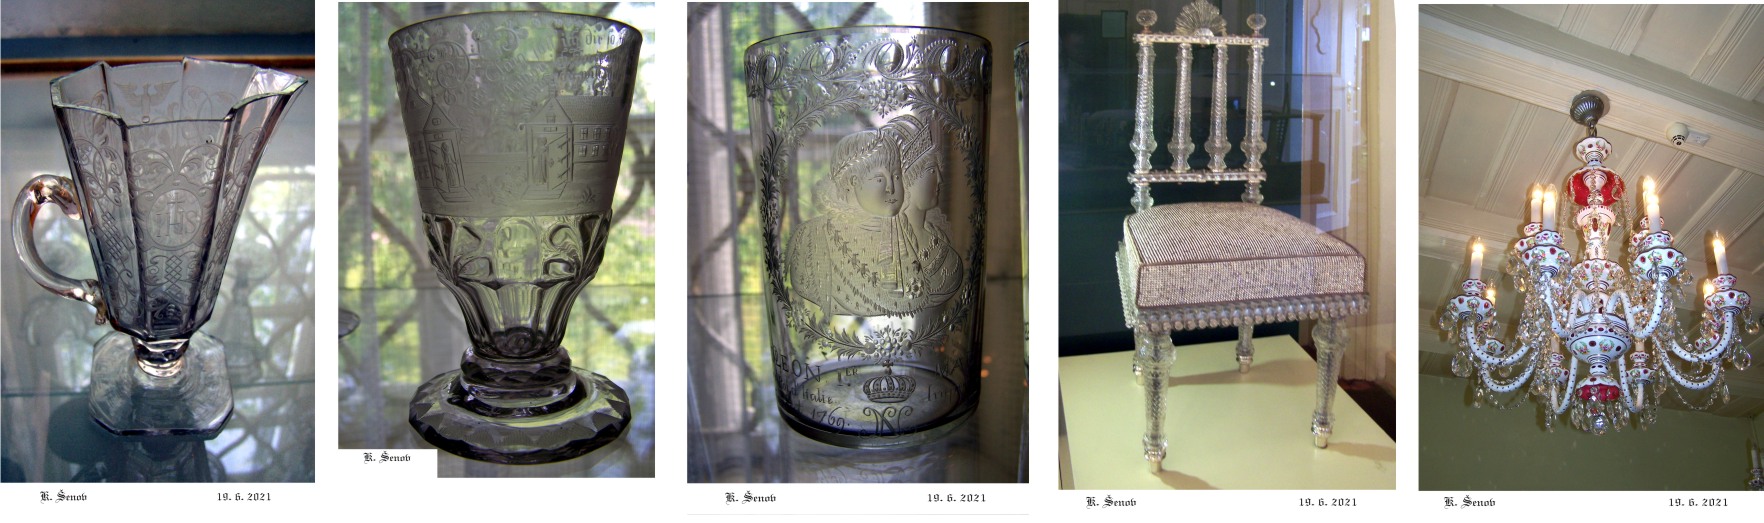 Kamenický Šenov - historické skvosty rytého skla, skleněného nábytku a skleněných emailových lustrů.